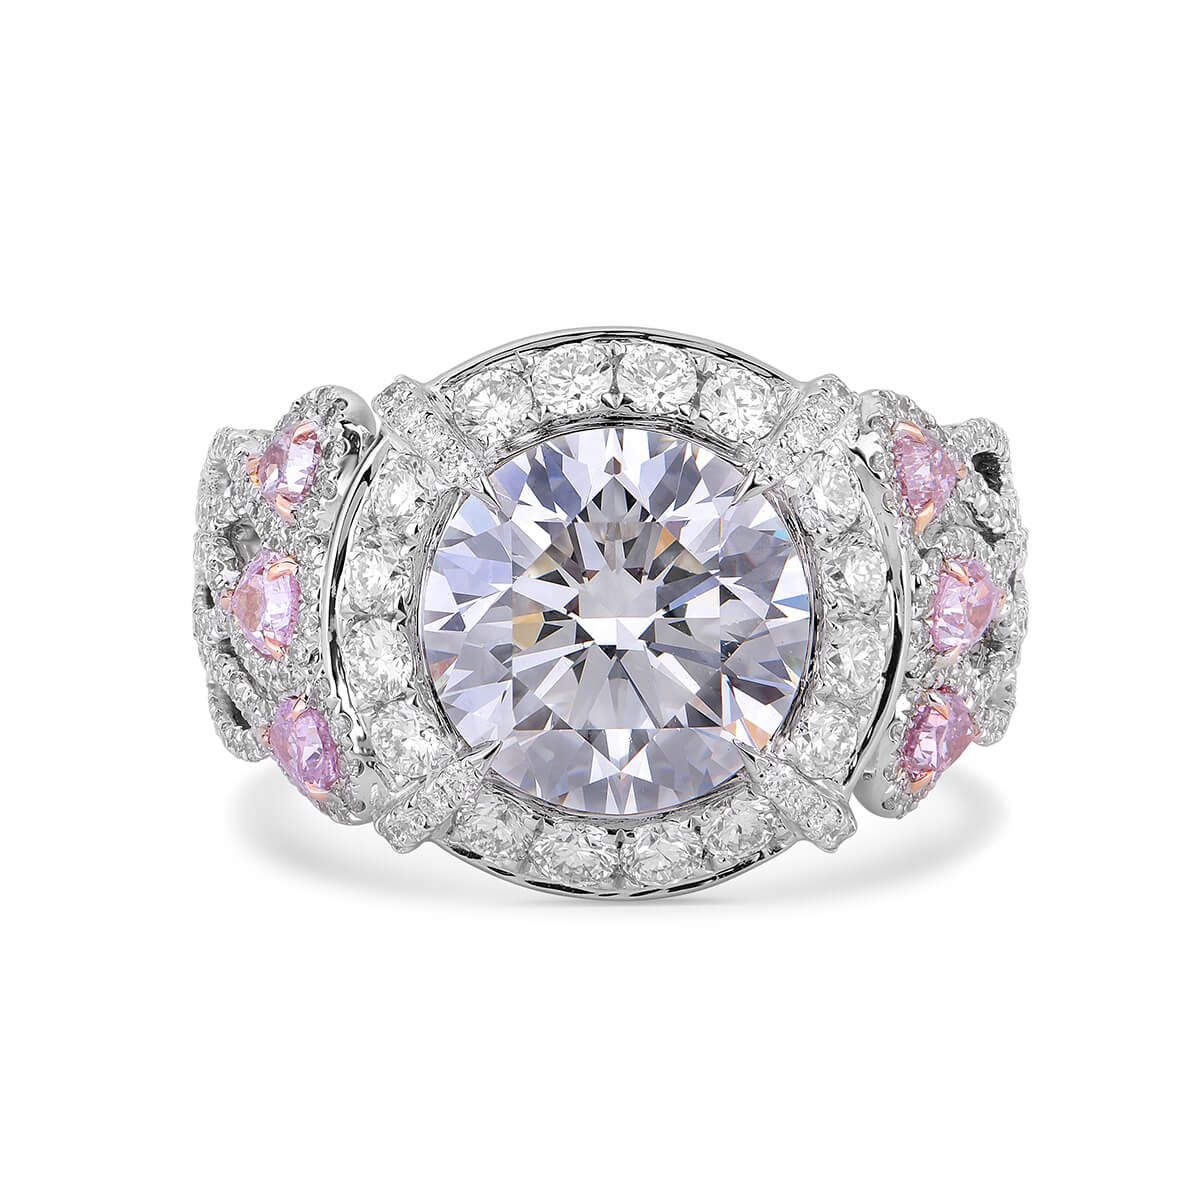  White Diamond Ring, 1.77 Ct. TW, Round shape, GIA Certified, 6235735965